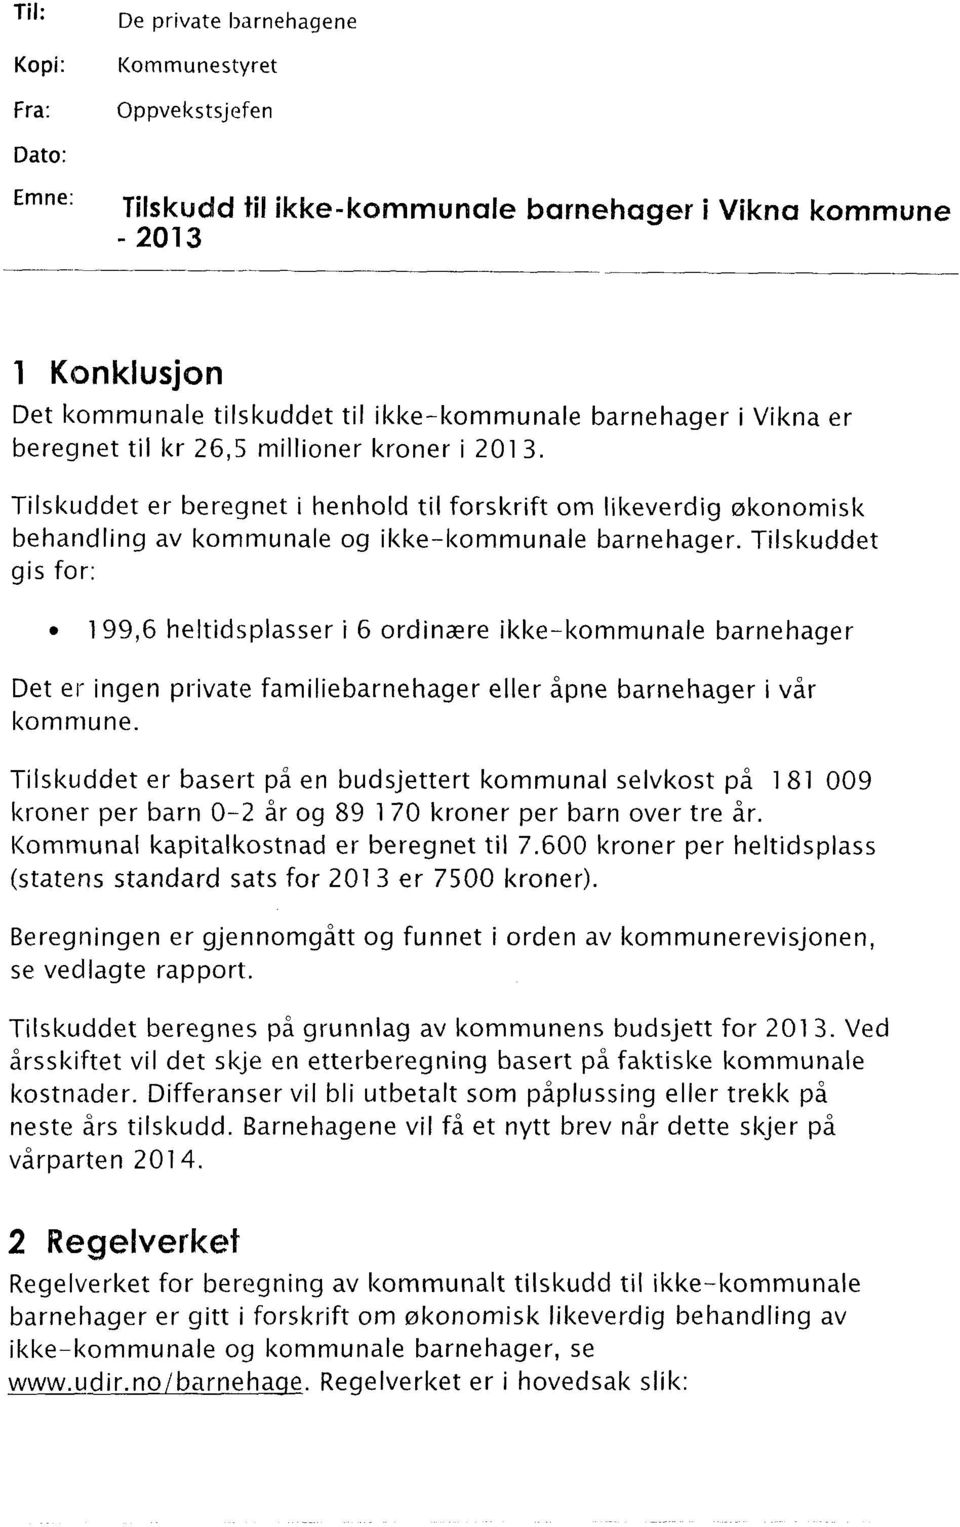 Tilskuddet gis for: 199,6 heltidsplasser i 6 ordinære ikke-kommunale barnehager Det er ingen private familiebarnehager eller åpne barnehager i vår kommune.